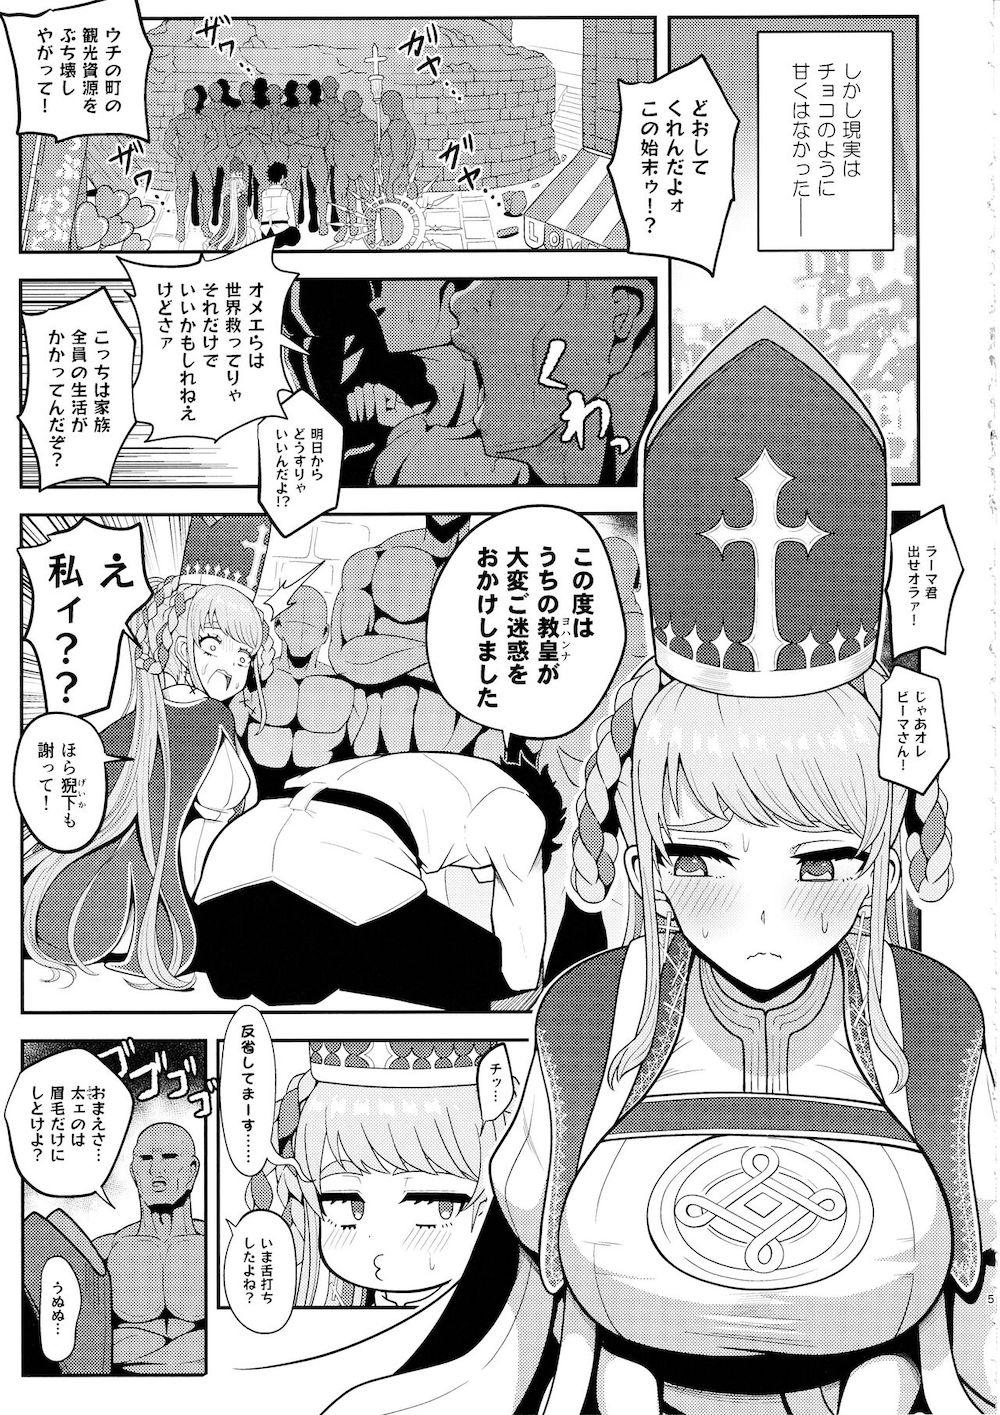 【Fate/Grand Order】バレンタインイベントで街の人たちに反感を買ってしまった女教皇ヨハンナが言われるがままカラダを弄ばれて責任を取らされちゃう乱交セックス4